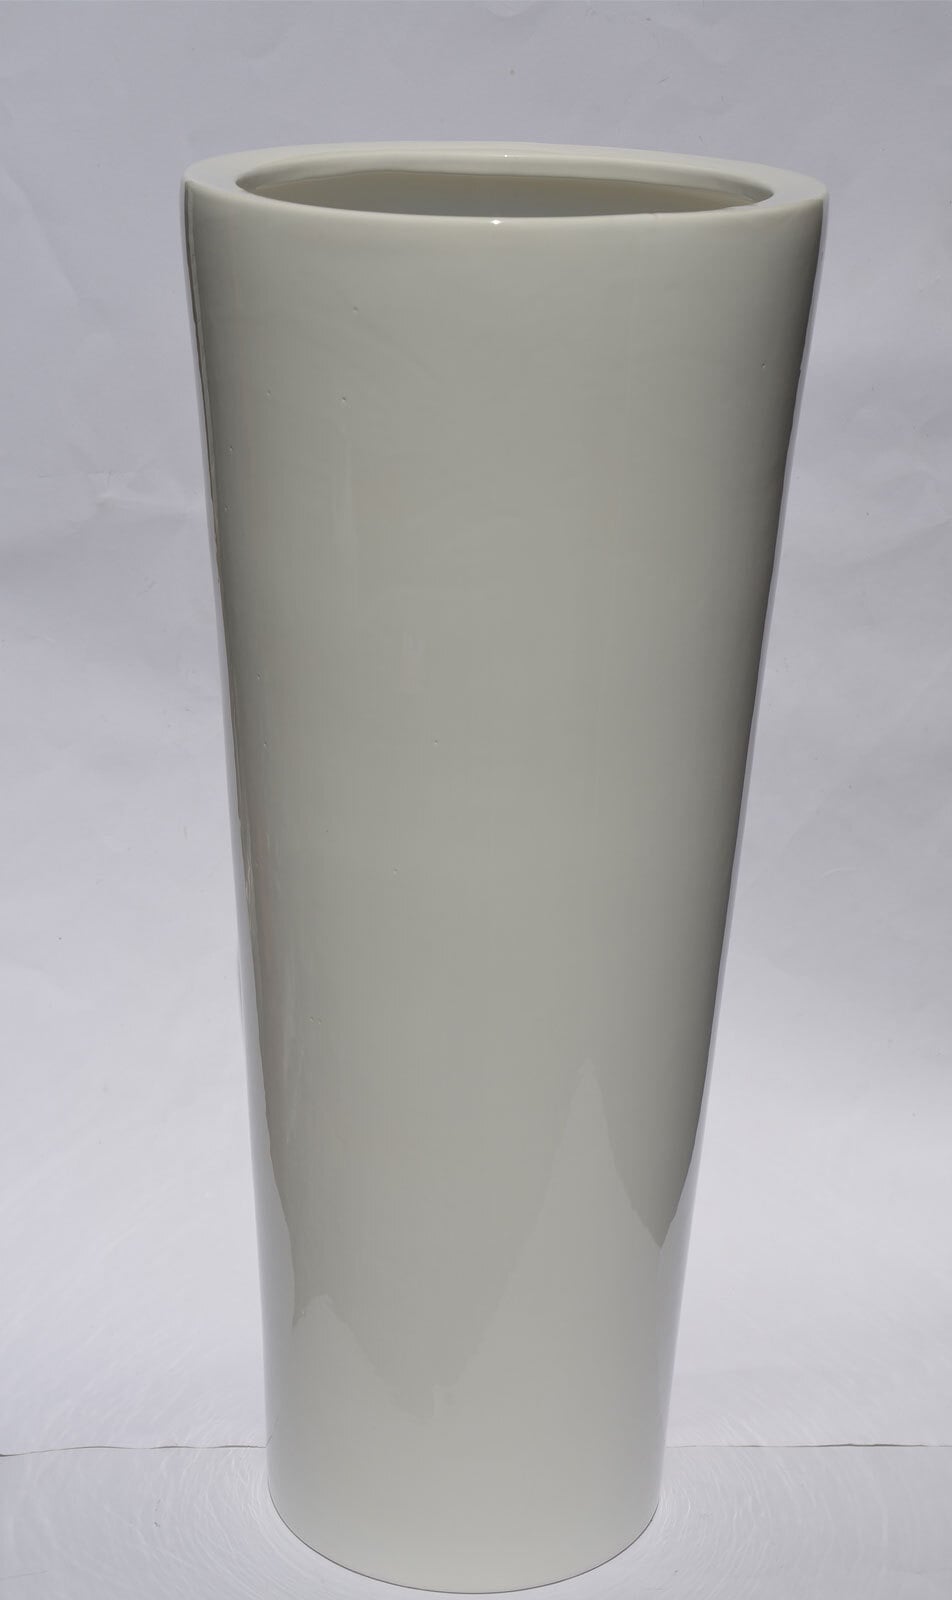 Konische Bodenvase /Vase aus Keramik H 55 /Ø 24 Weiß glänzend